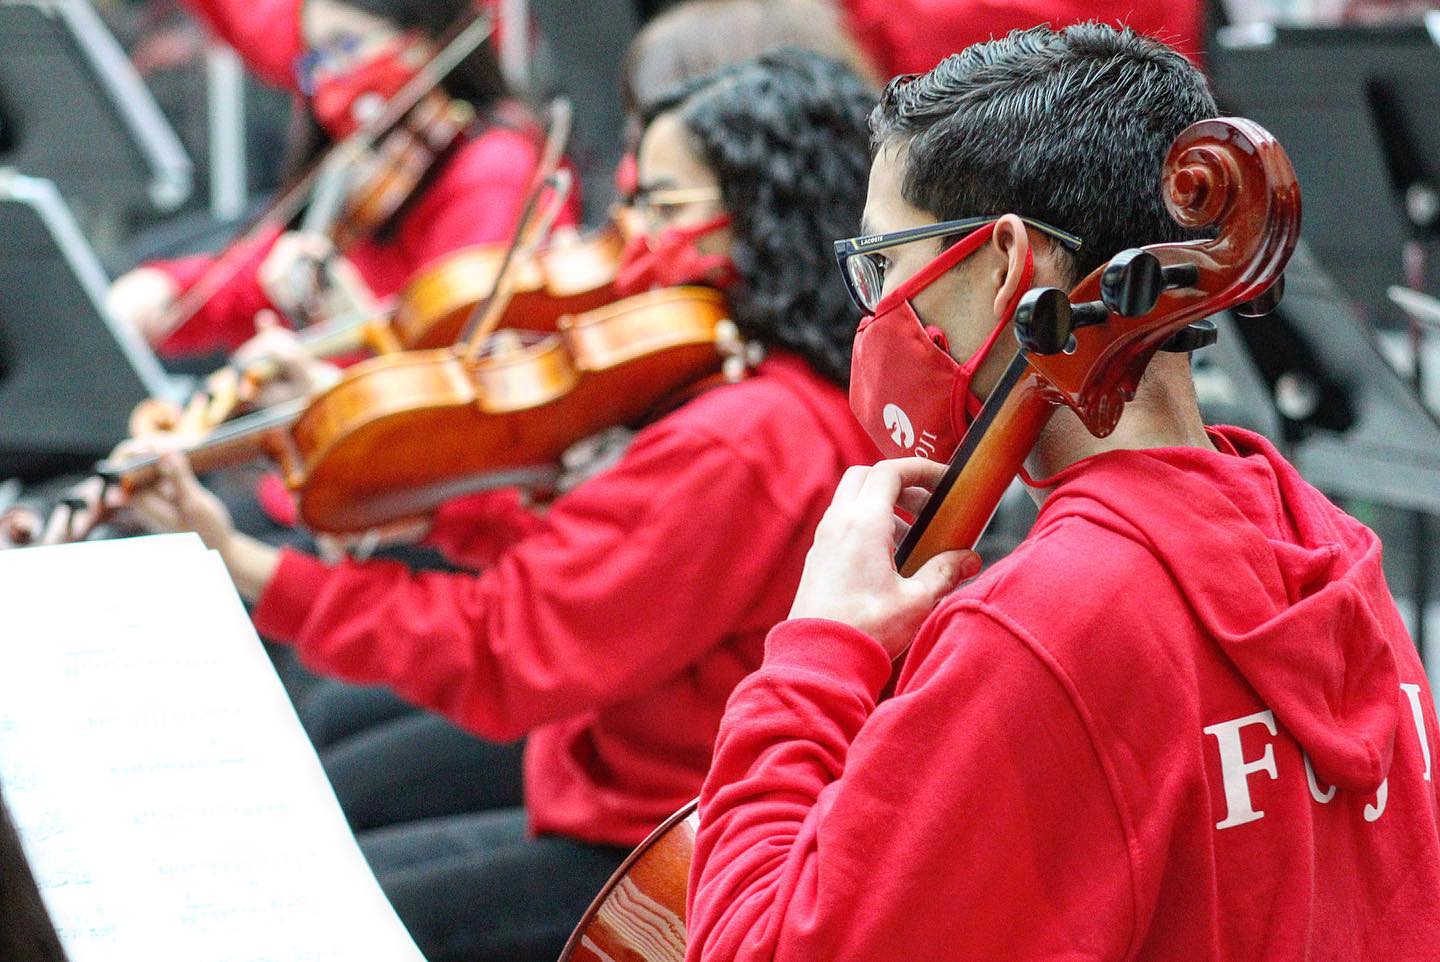 Orquesta Sinfónica Estudiantil Metropolitana presenta “Leitmotivs” en el Centro Cultural Espacio Matta